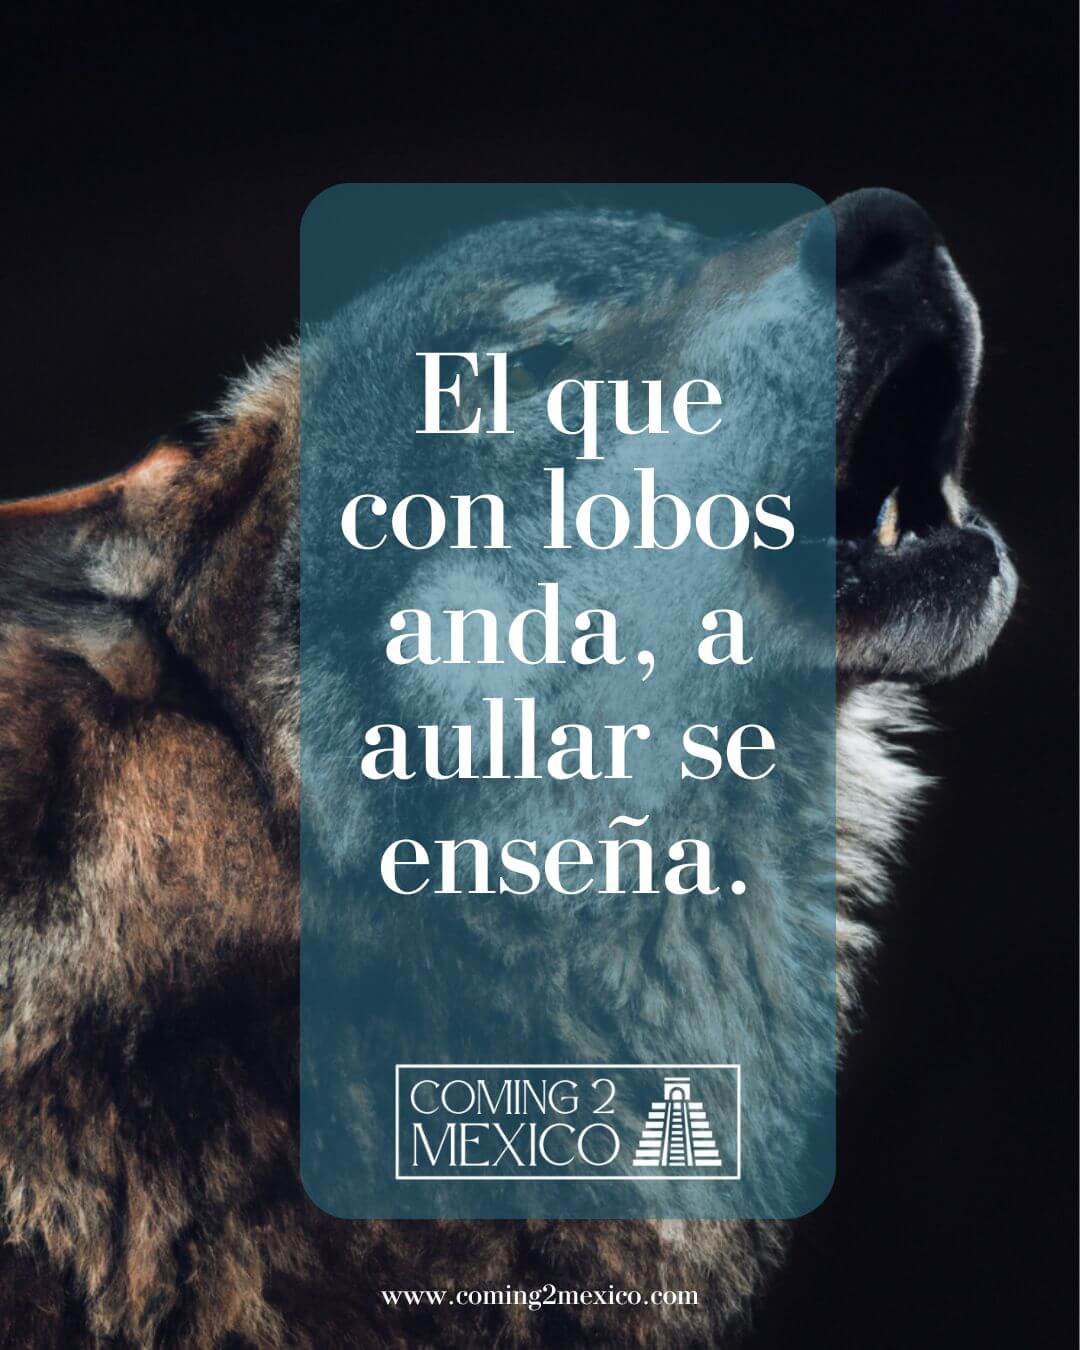 "El que con lobos anda, a aullar se enseña." - He who runs with wolves will learn to howl.